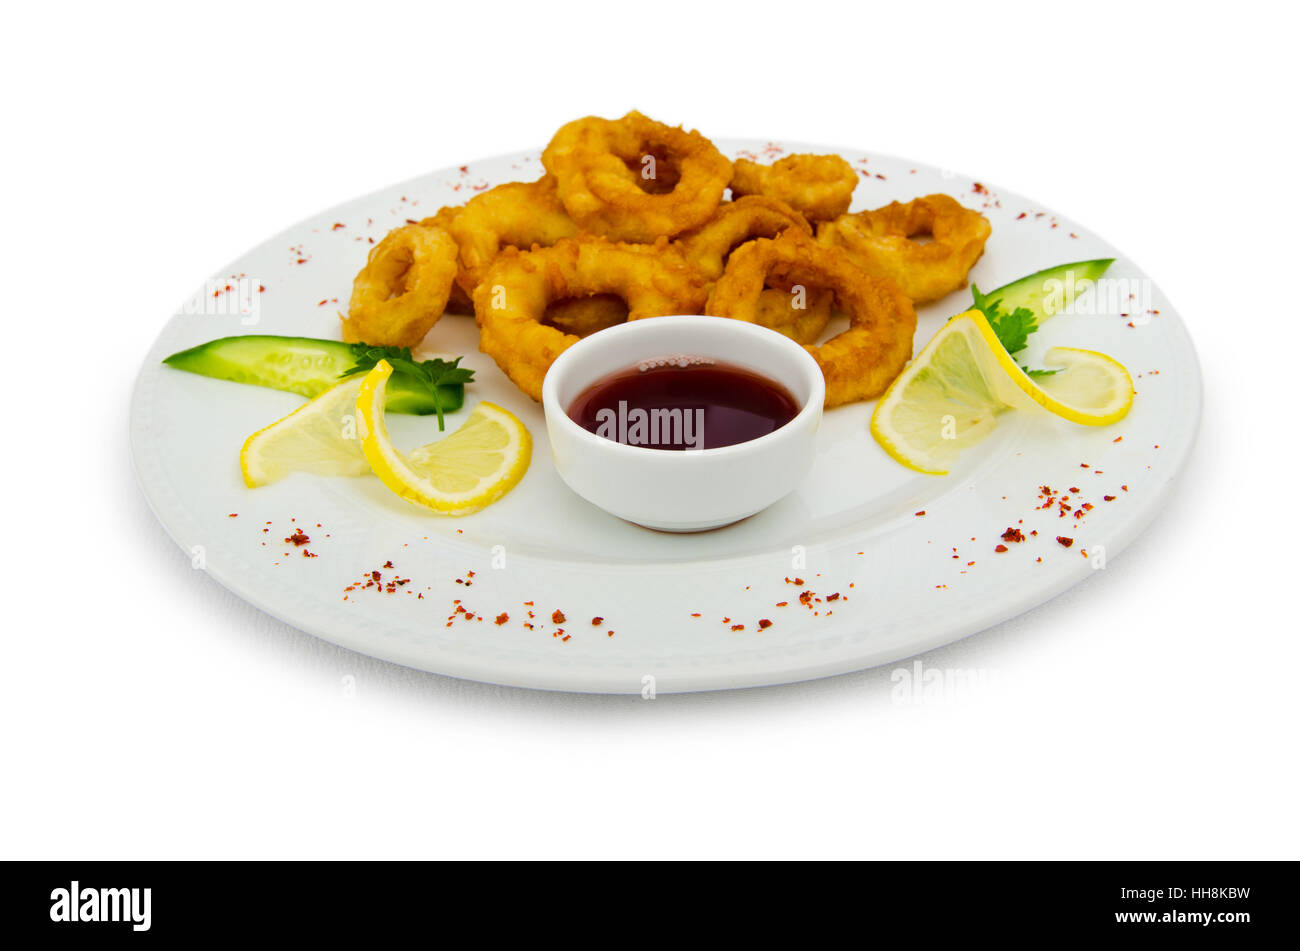 Fried Calamari | Recipe | Fried calamari, Calamari, Amazing food